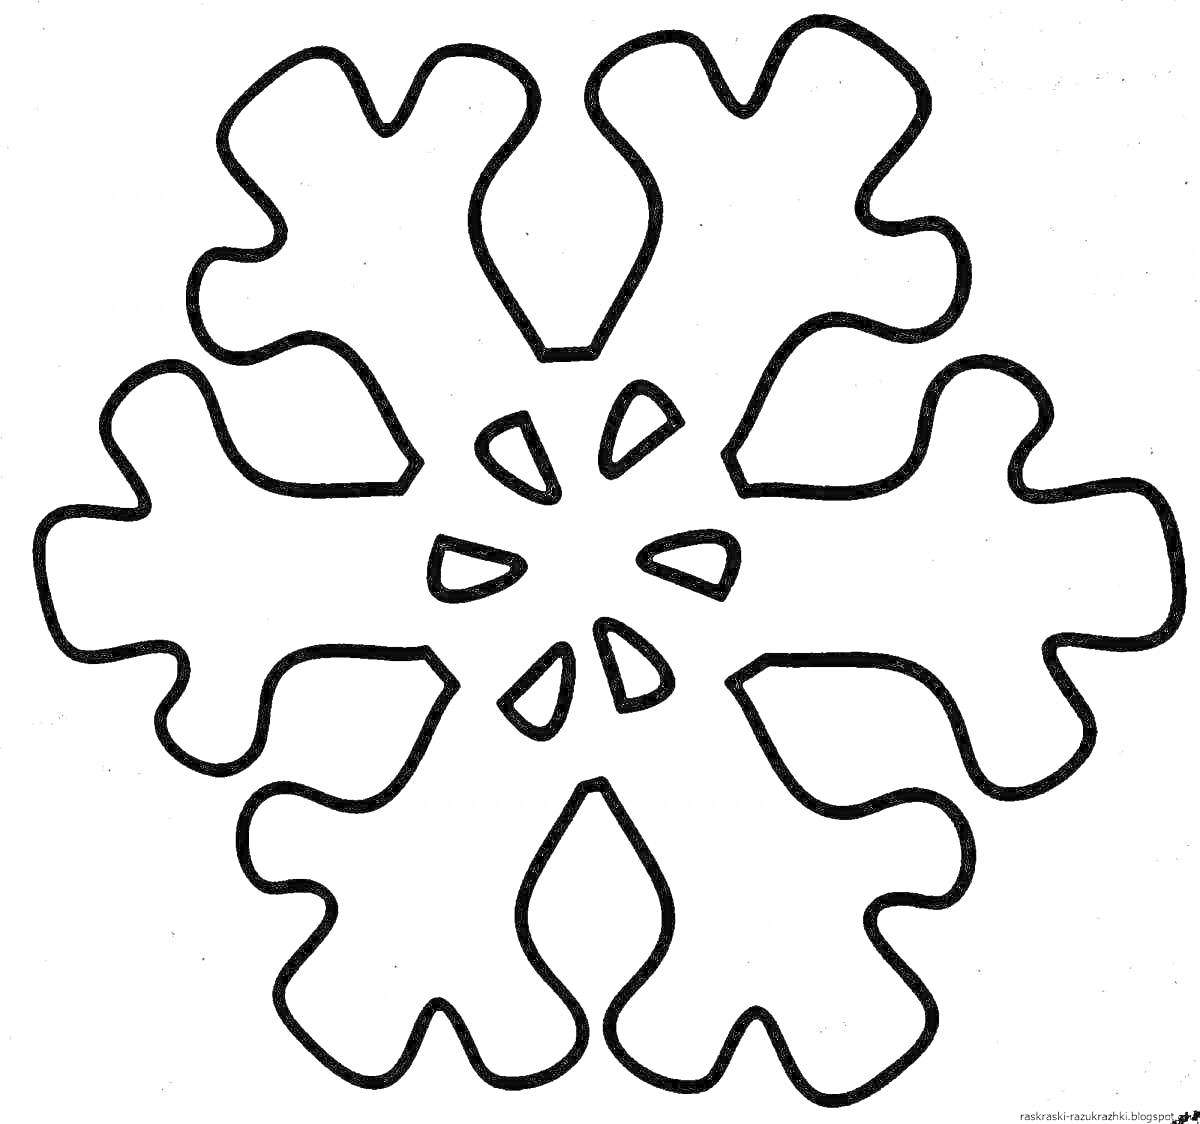 Раскраска Снежинка с шестью крупными и изогнутыми лучами